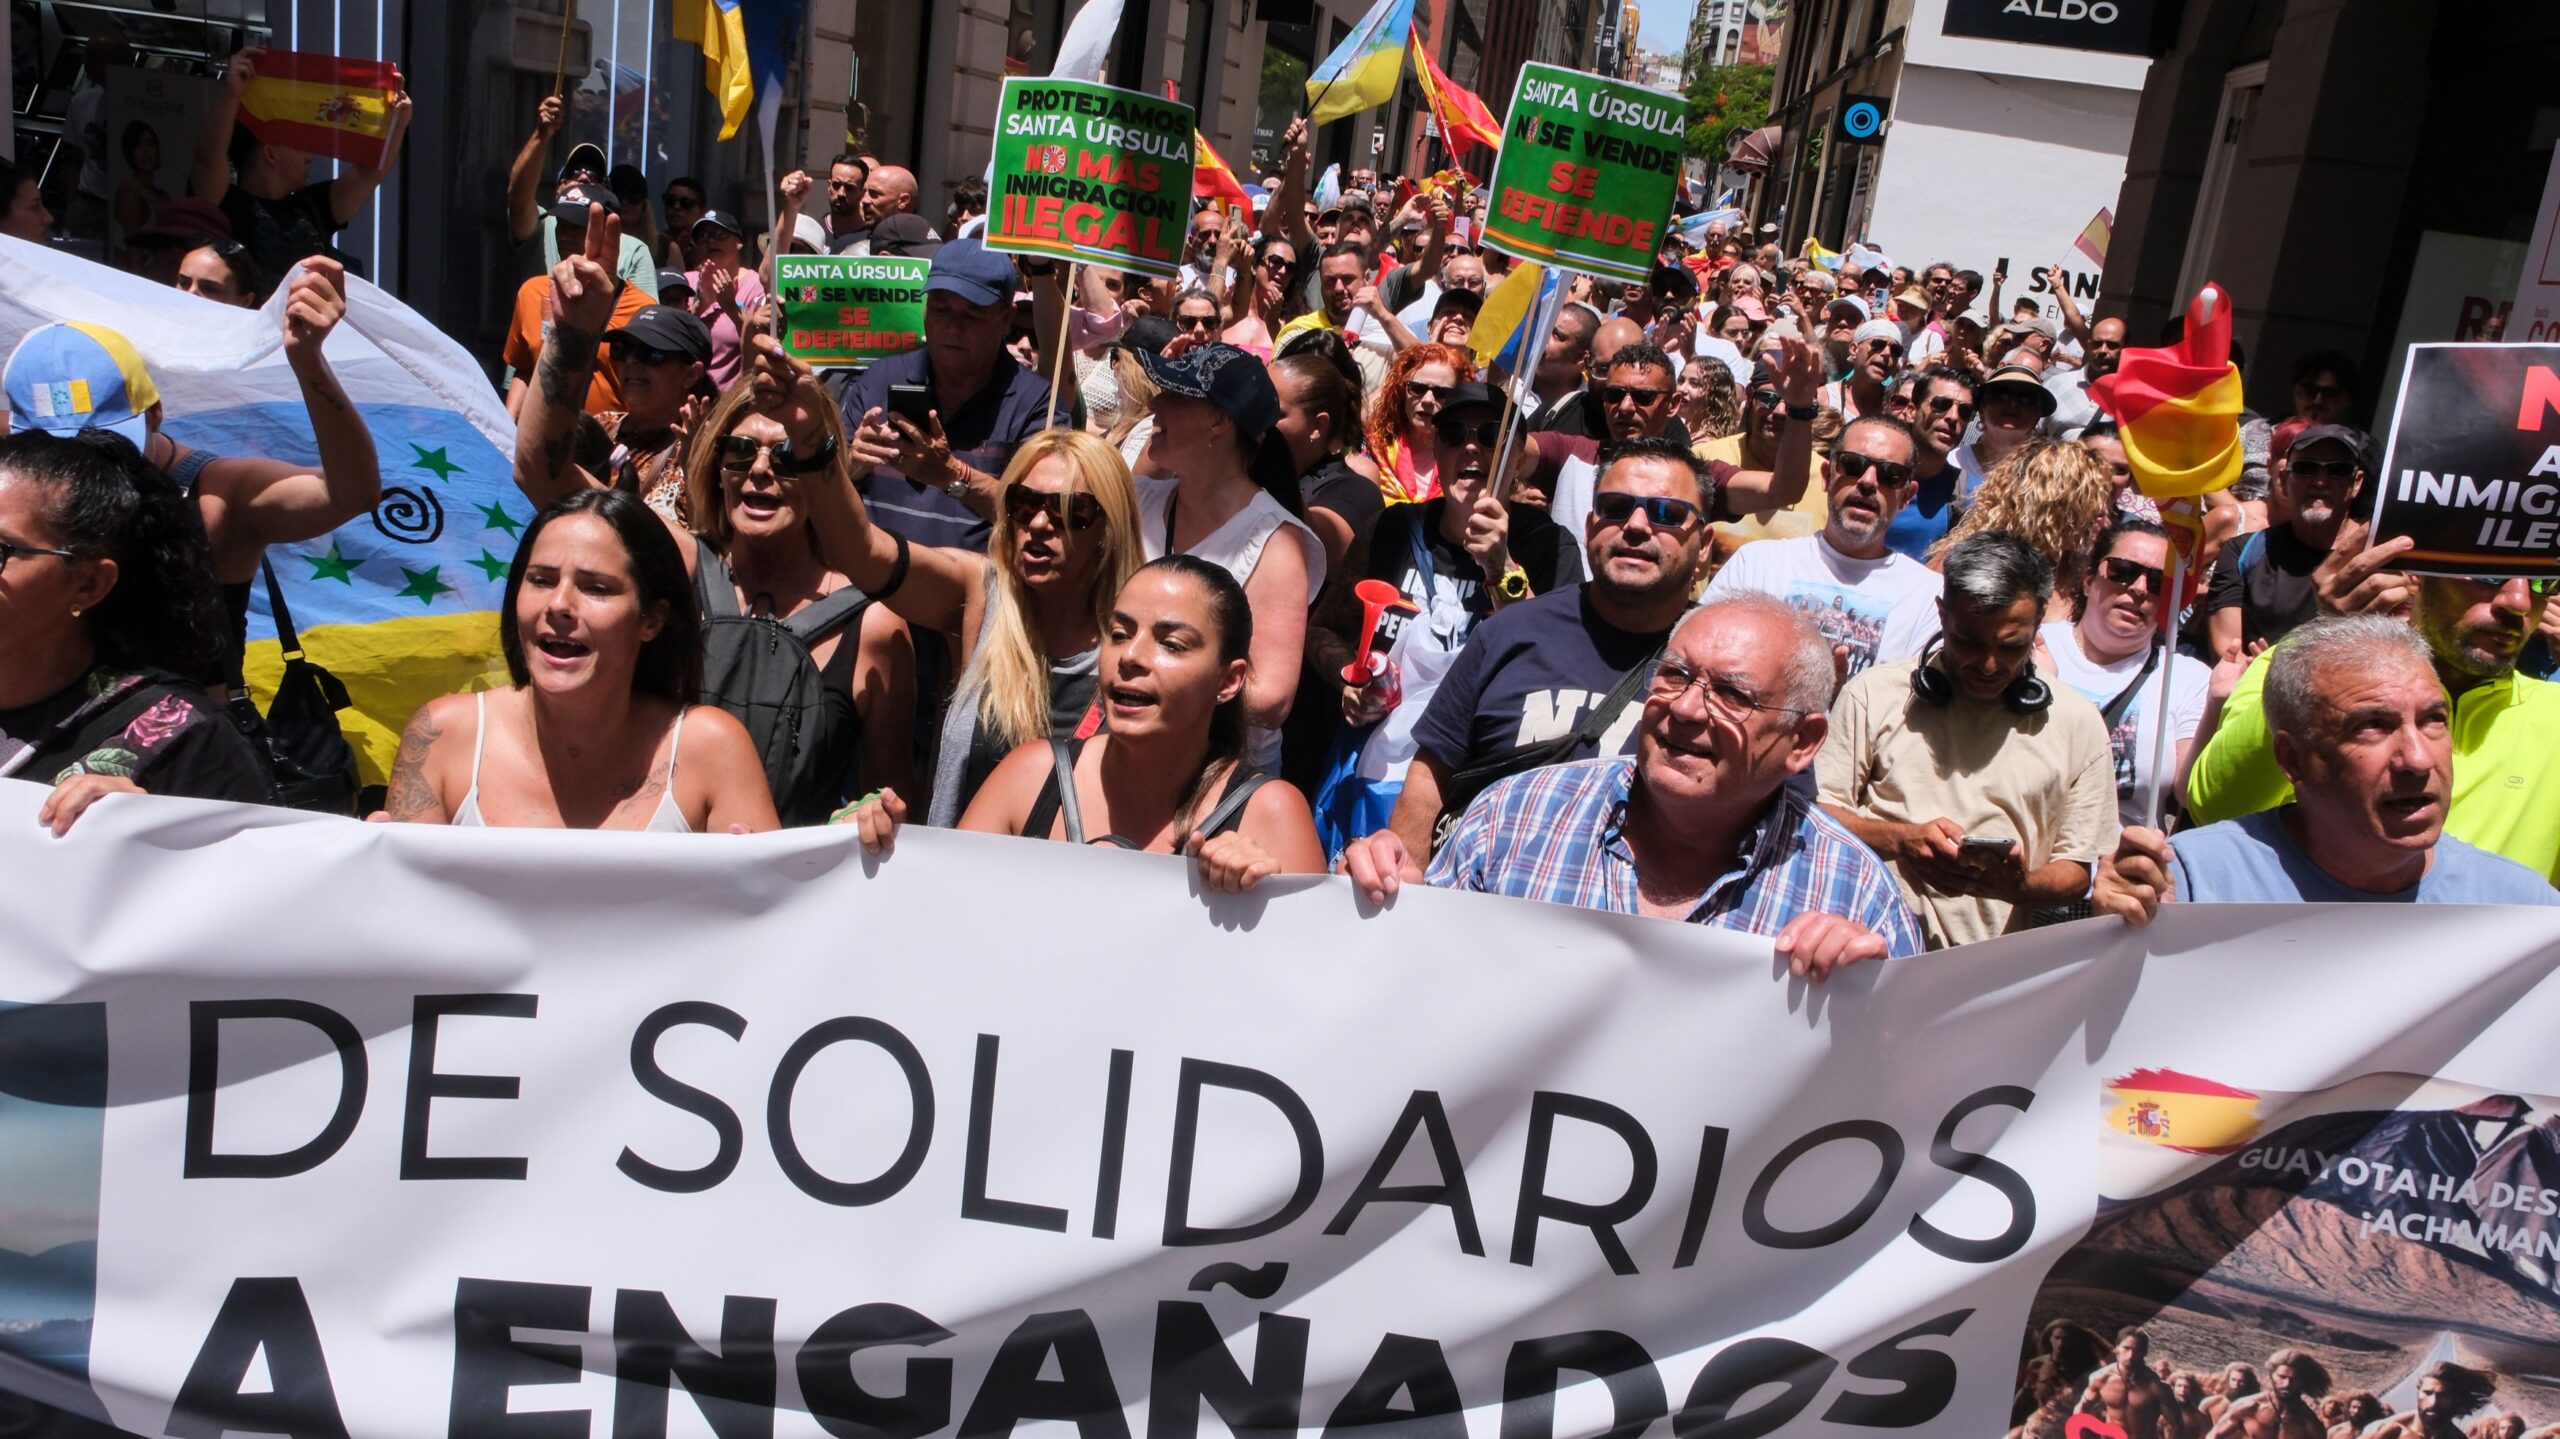 Centenares de personas se manifiestan en Canarias en contra de la inmigración irregular